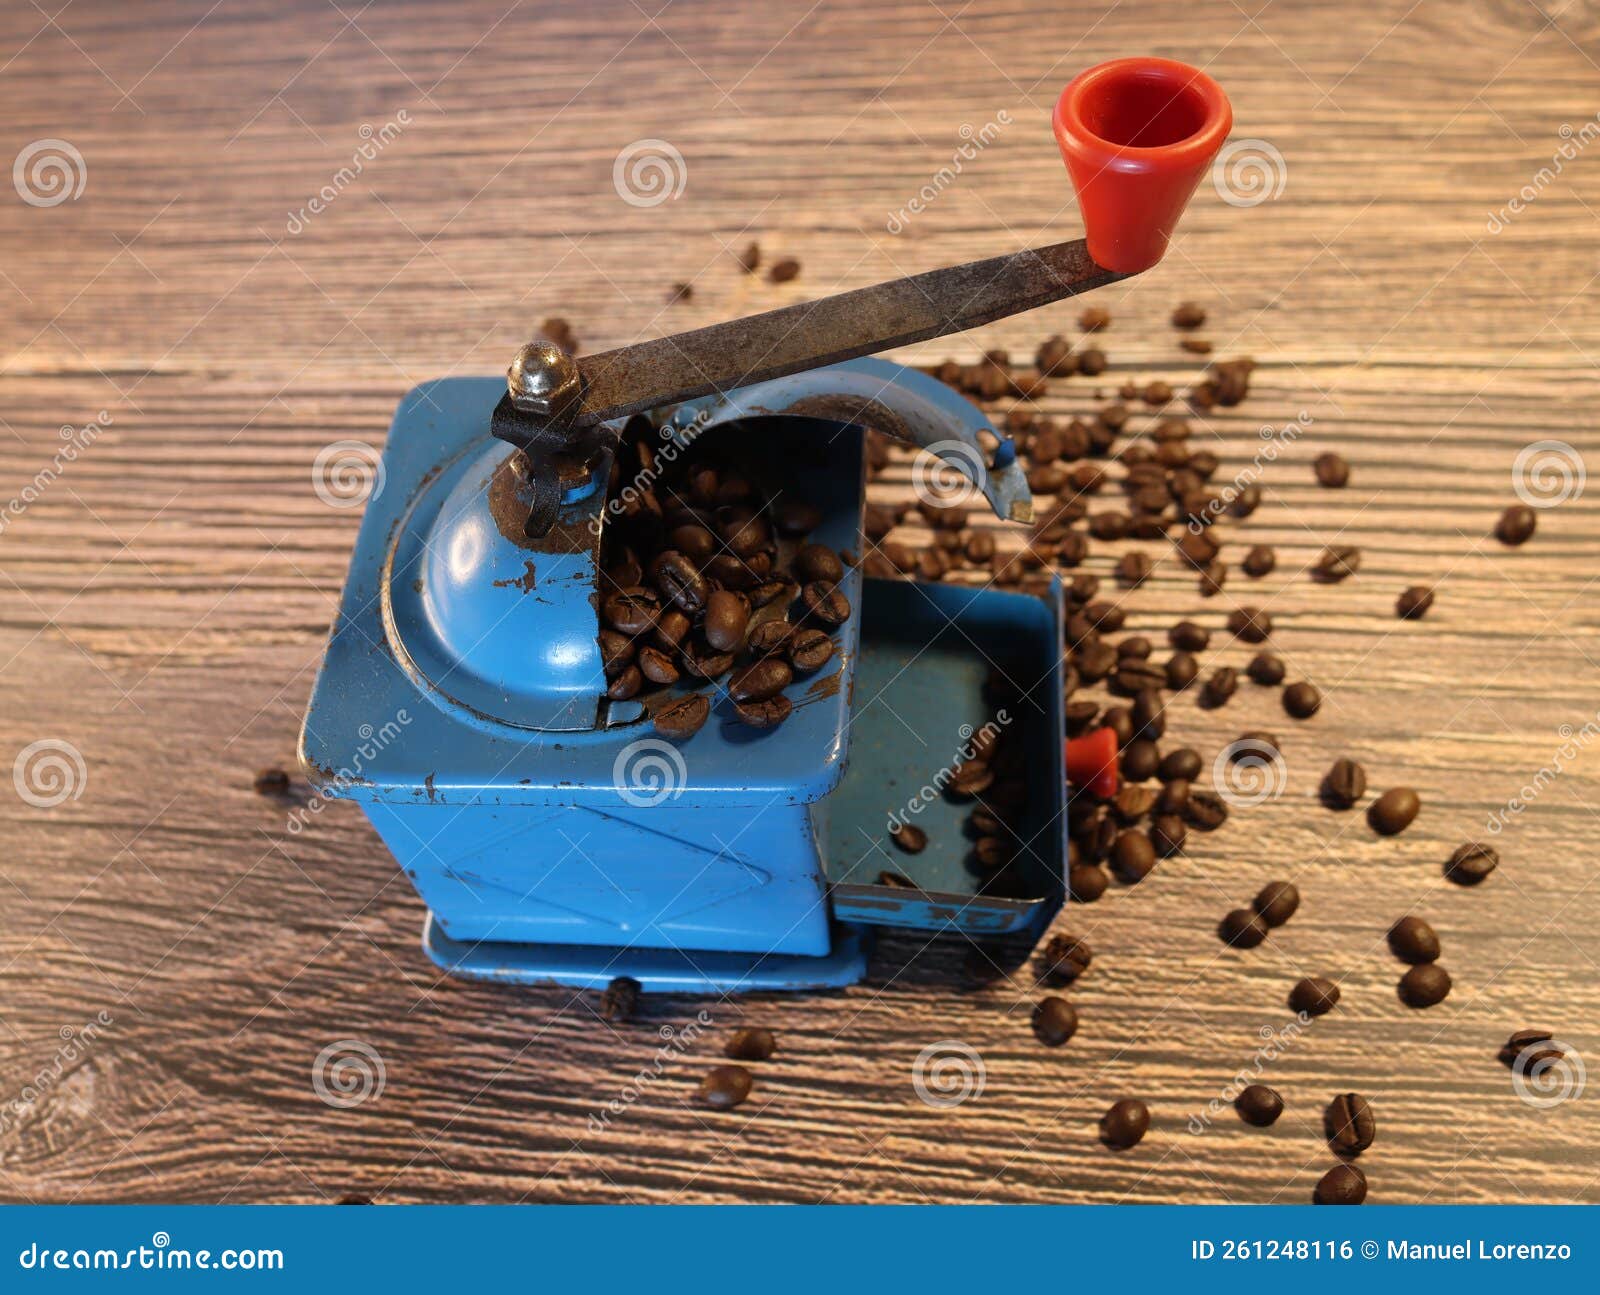 grinding machine coffee beans old manual metal grinder